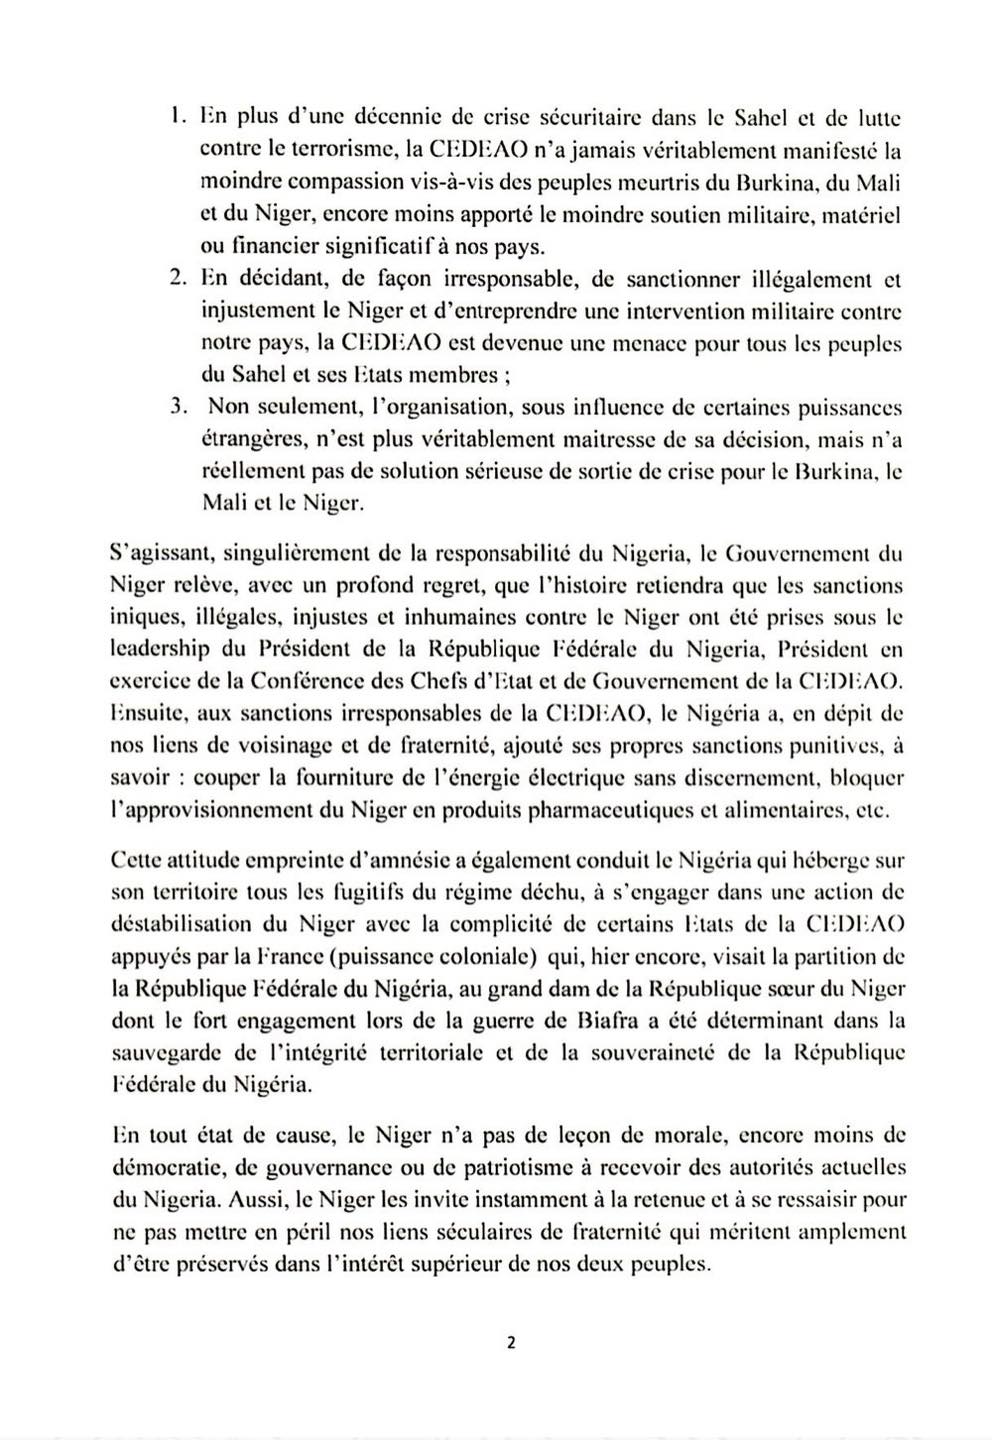 communique de presse du ministere des affaires etrangeres maec niger sur le retrait du niger du burkina faso et du mali de la cedeao